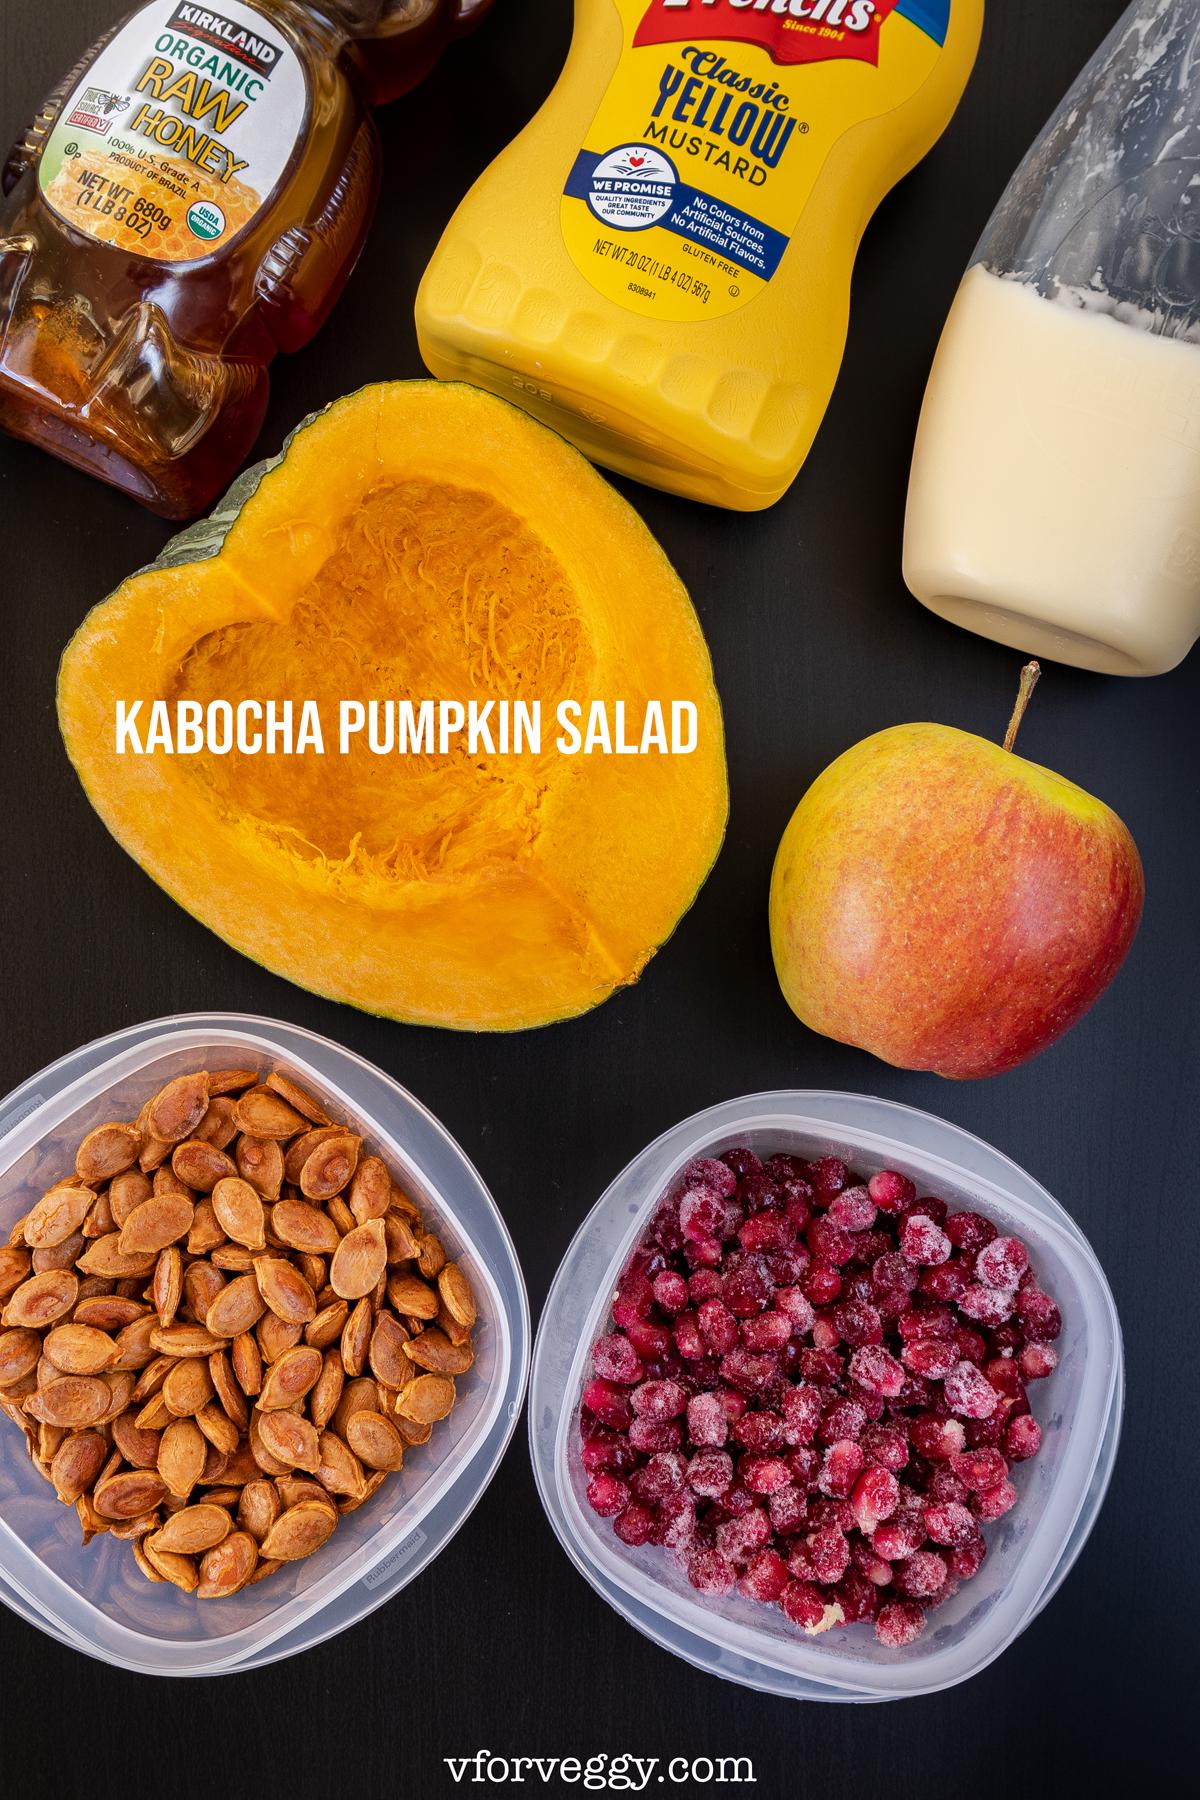 Ingredients for kabocha pumpkin salad: kabocha pumpkin flesh, apple, kabocha pumpkin seeds, pomegranate seeds, mayonnaise, mustard, and honey.